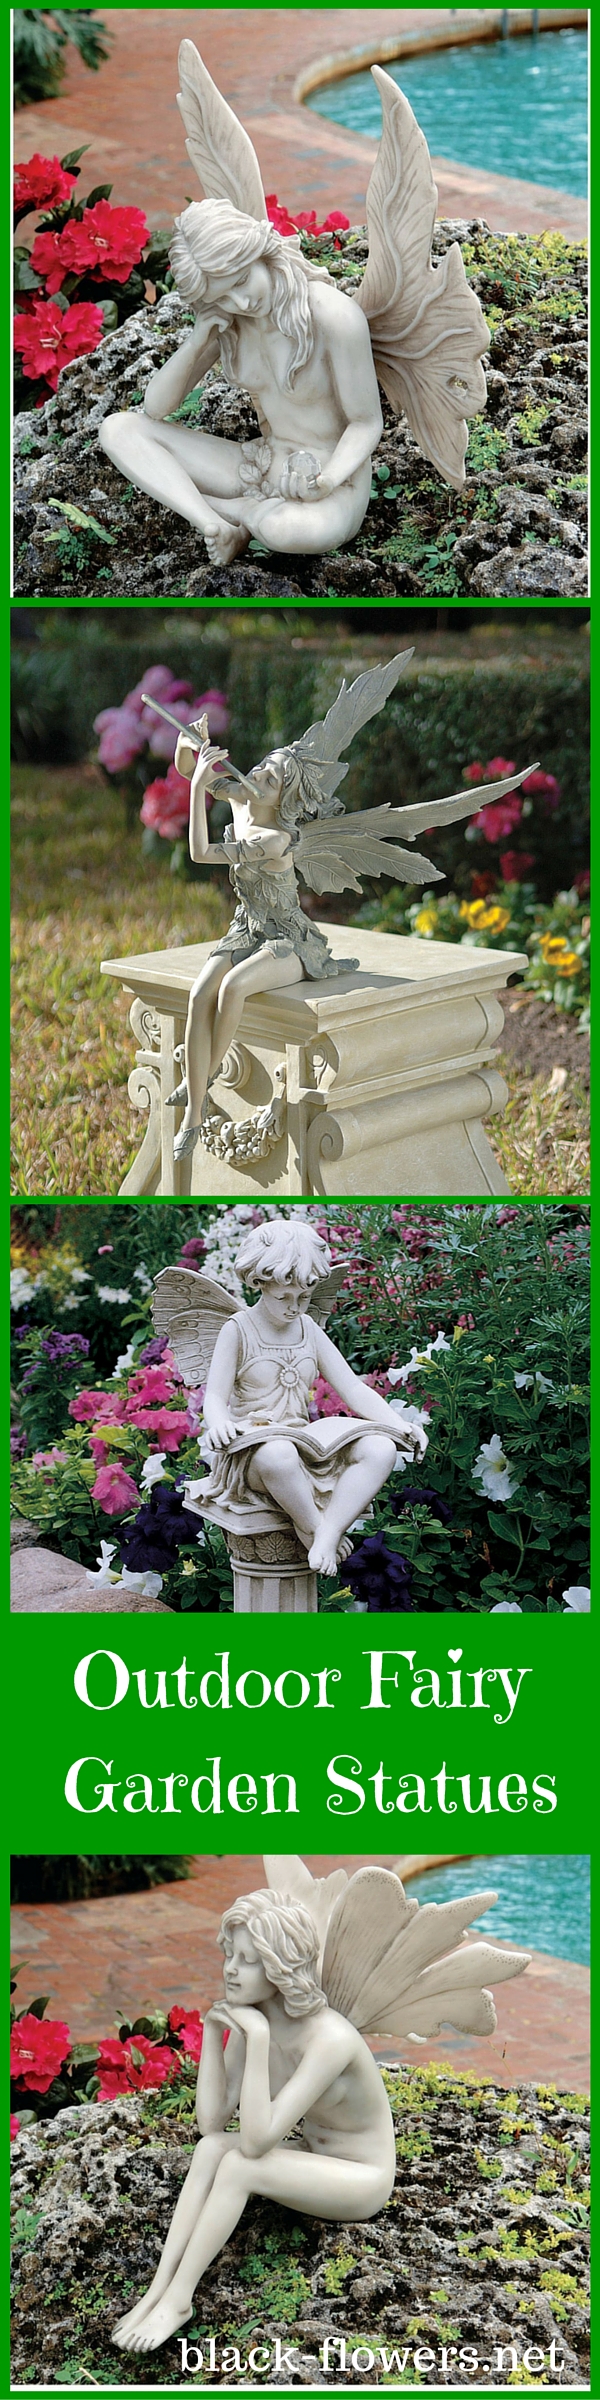 Outdoor Fairy Garden Statues